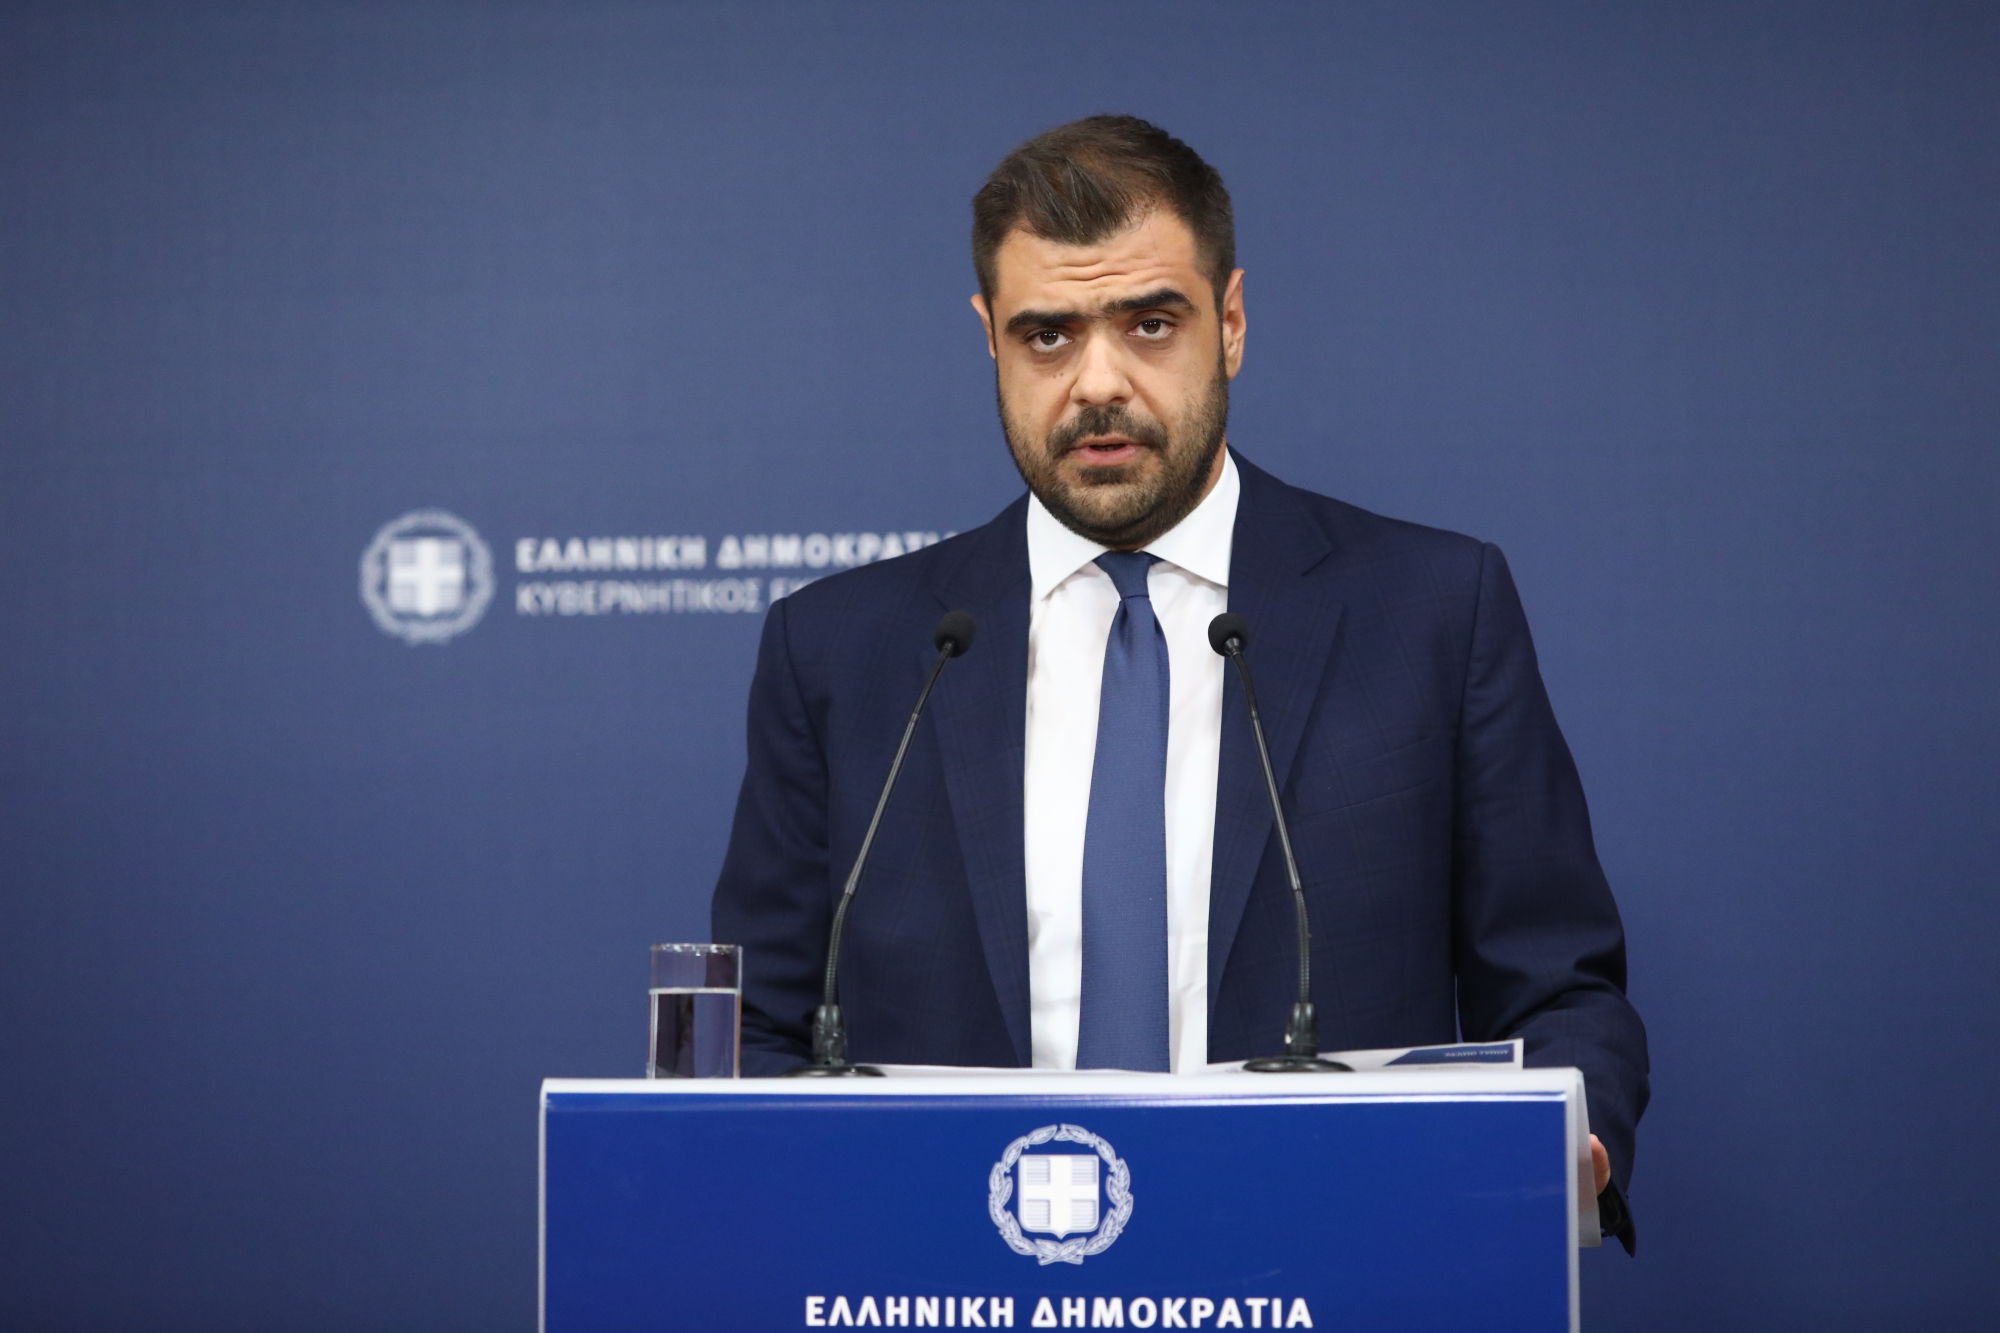 Παύλος Μαρινάκης: «Θα τεθεί σε αργία εάν εκλεγεί o Κασιδιάρης» – δεν τίθεται ζήτημα ρύθμισης για να μην κατέβει